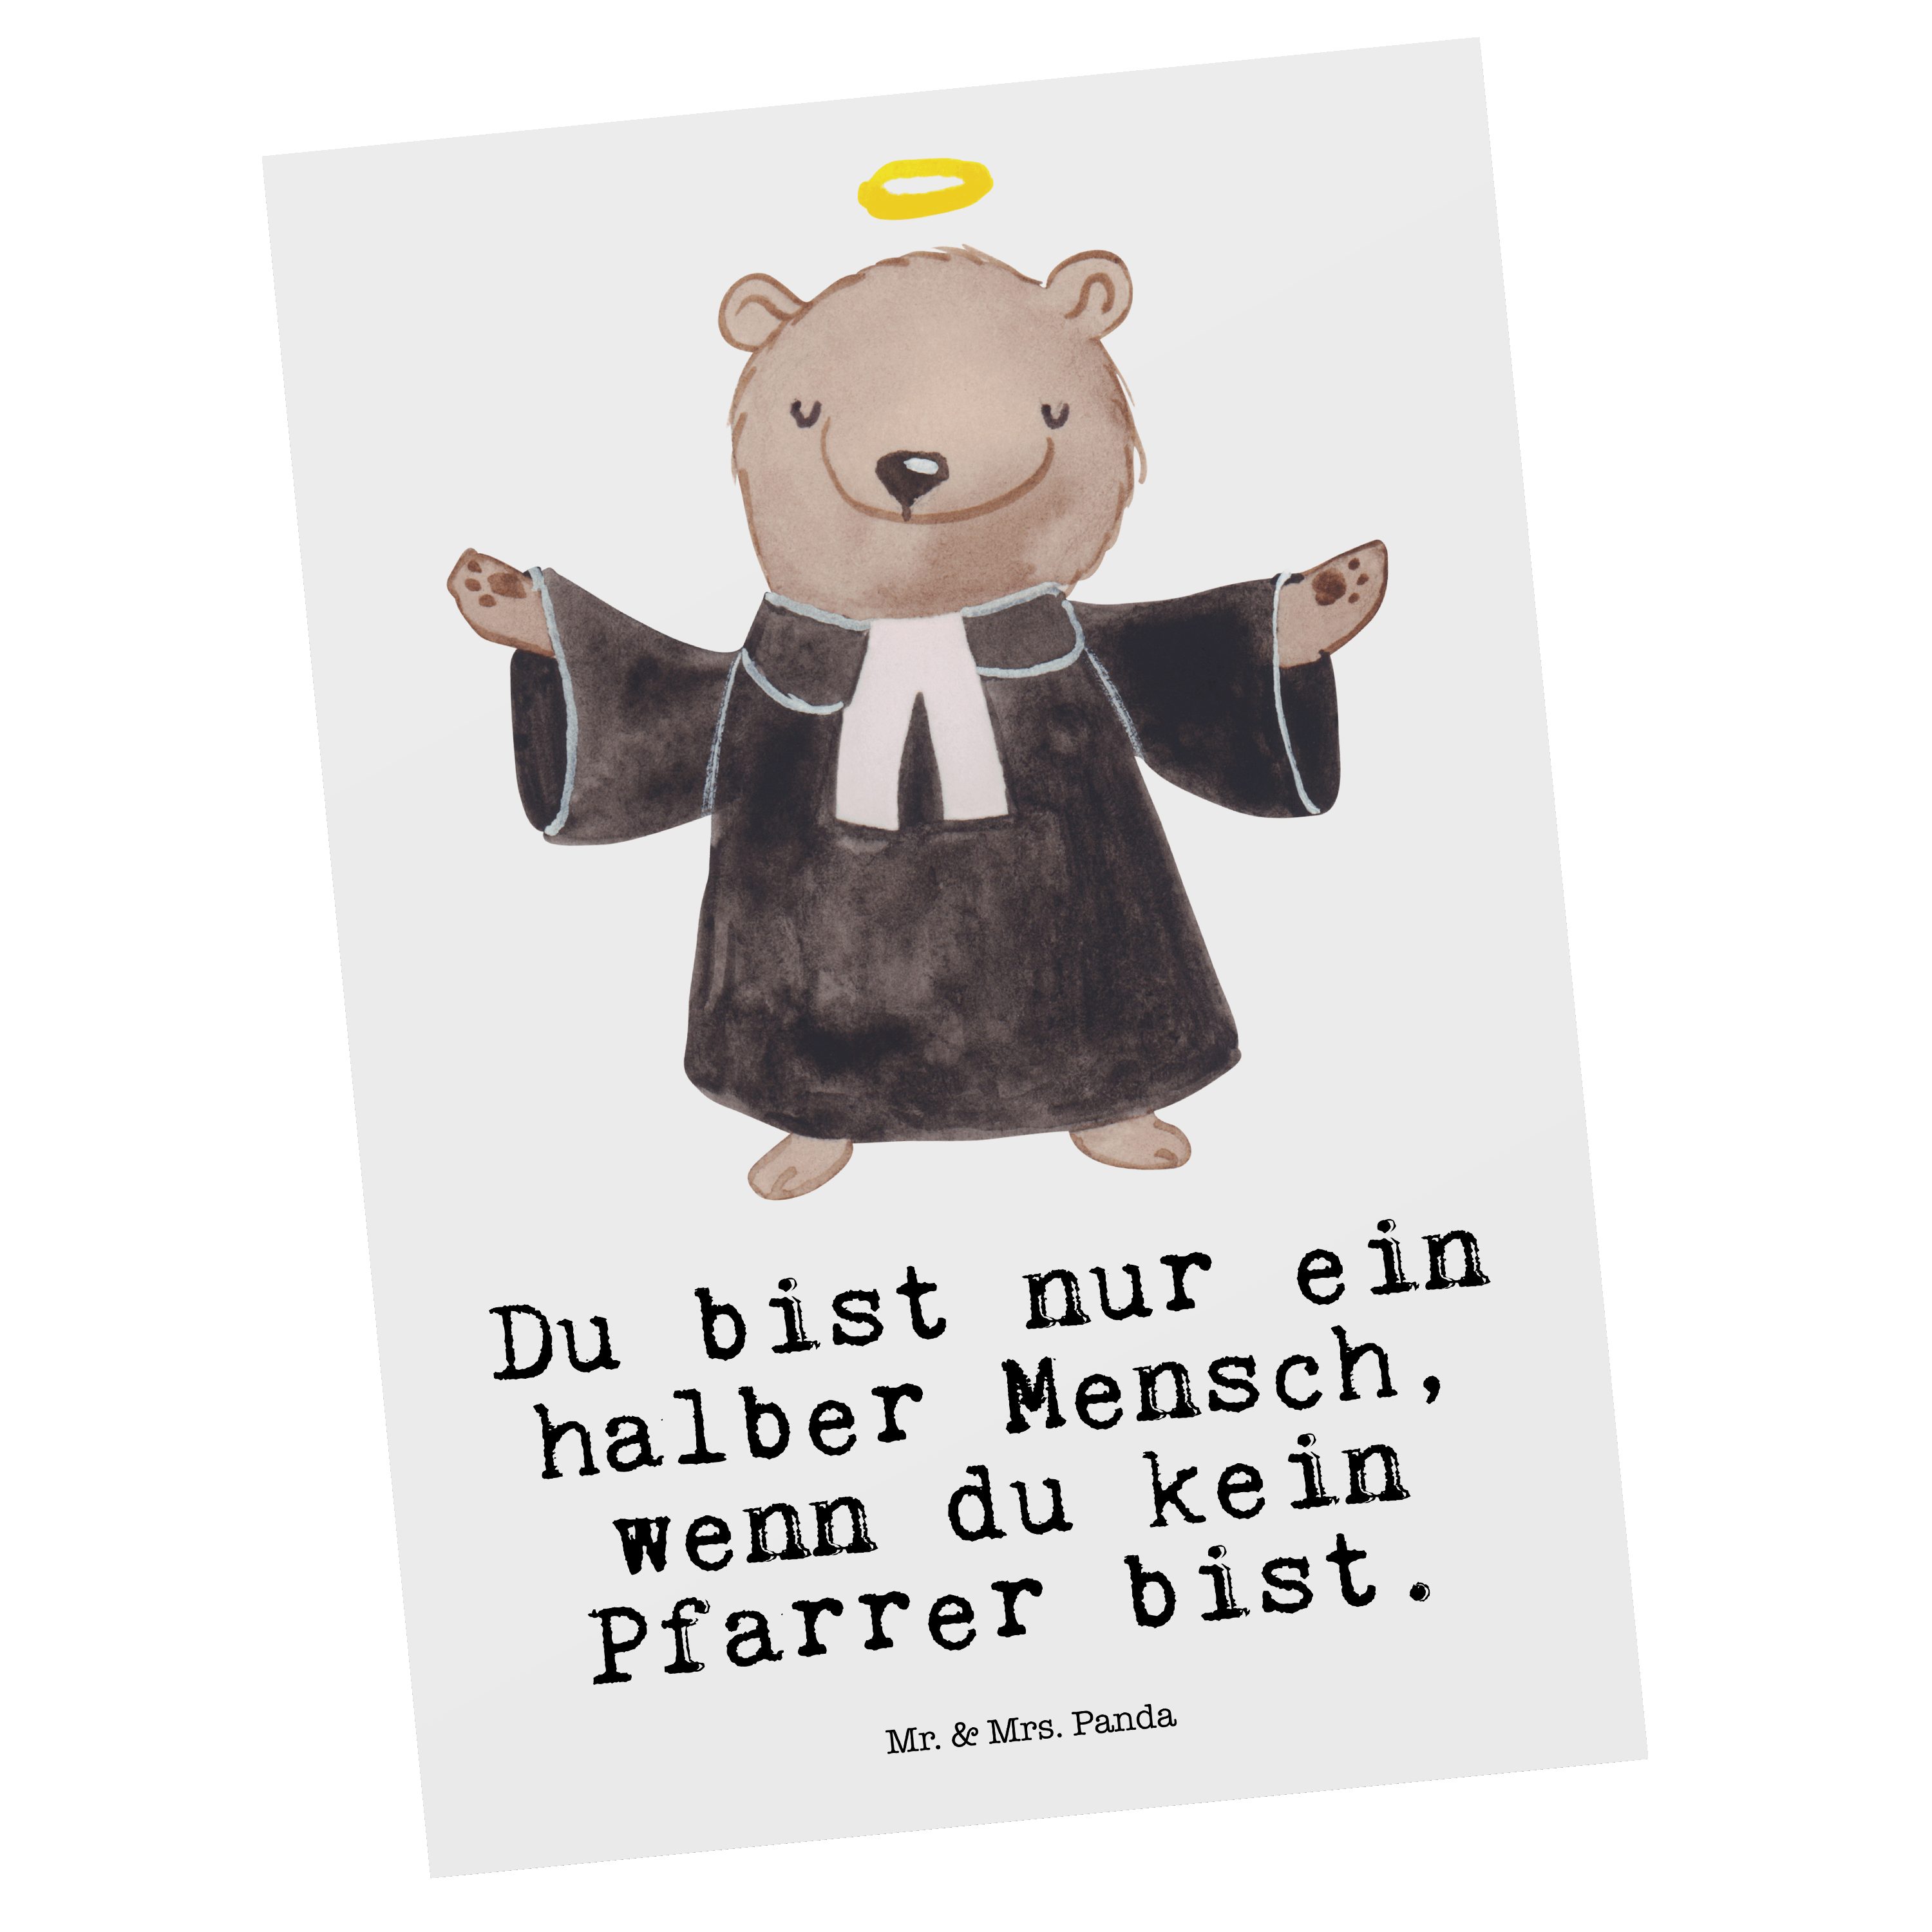 Mr. & Mrs. Panda Postkarte Pfarrer mit Herz - Weiß - Geschenk, Geschenkkarte, Einladungskarte, P